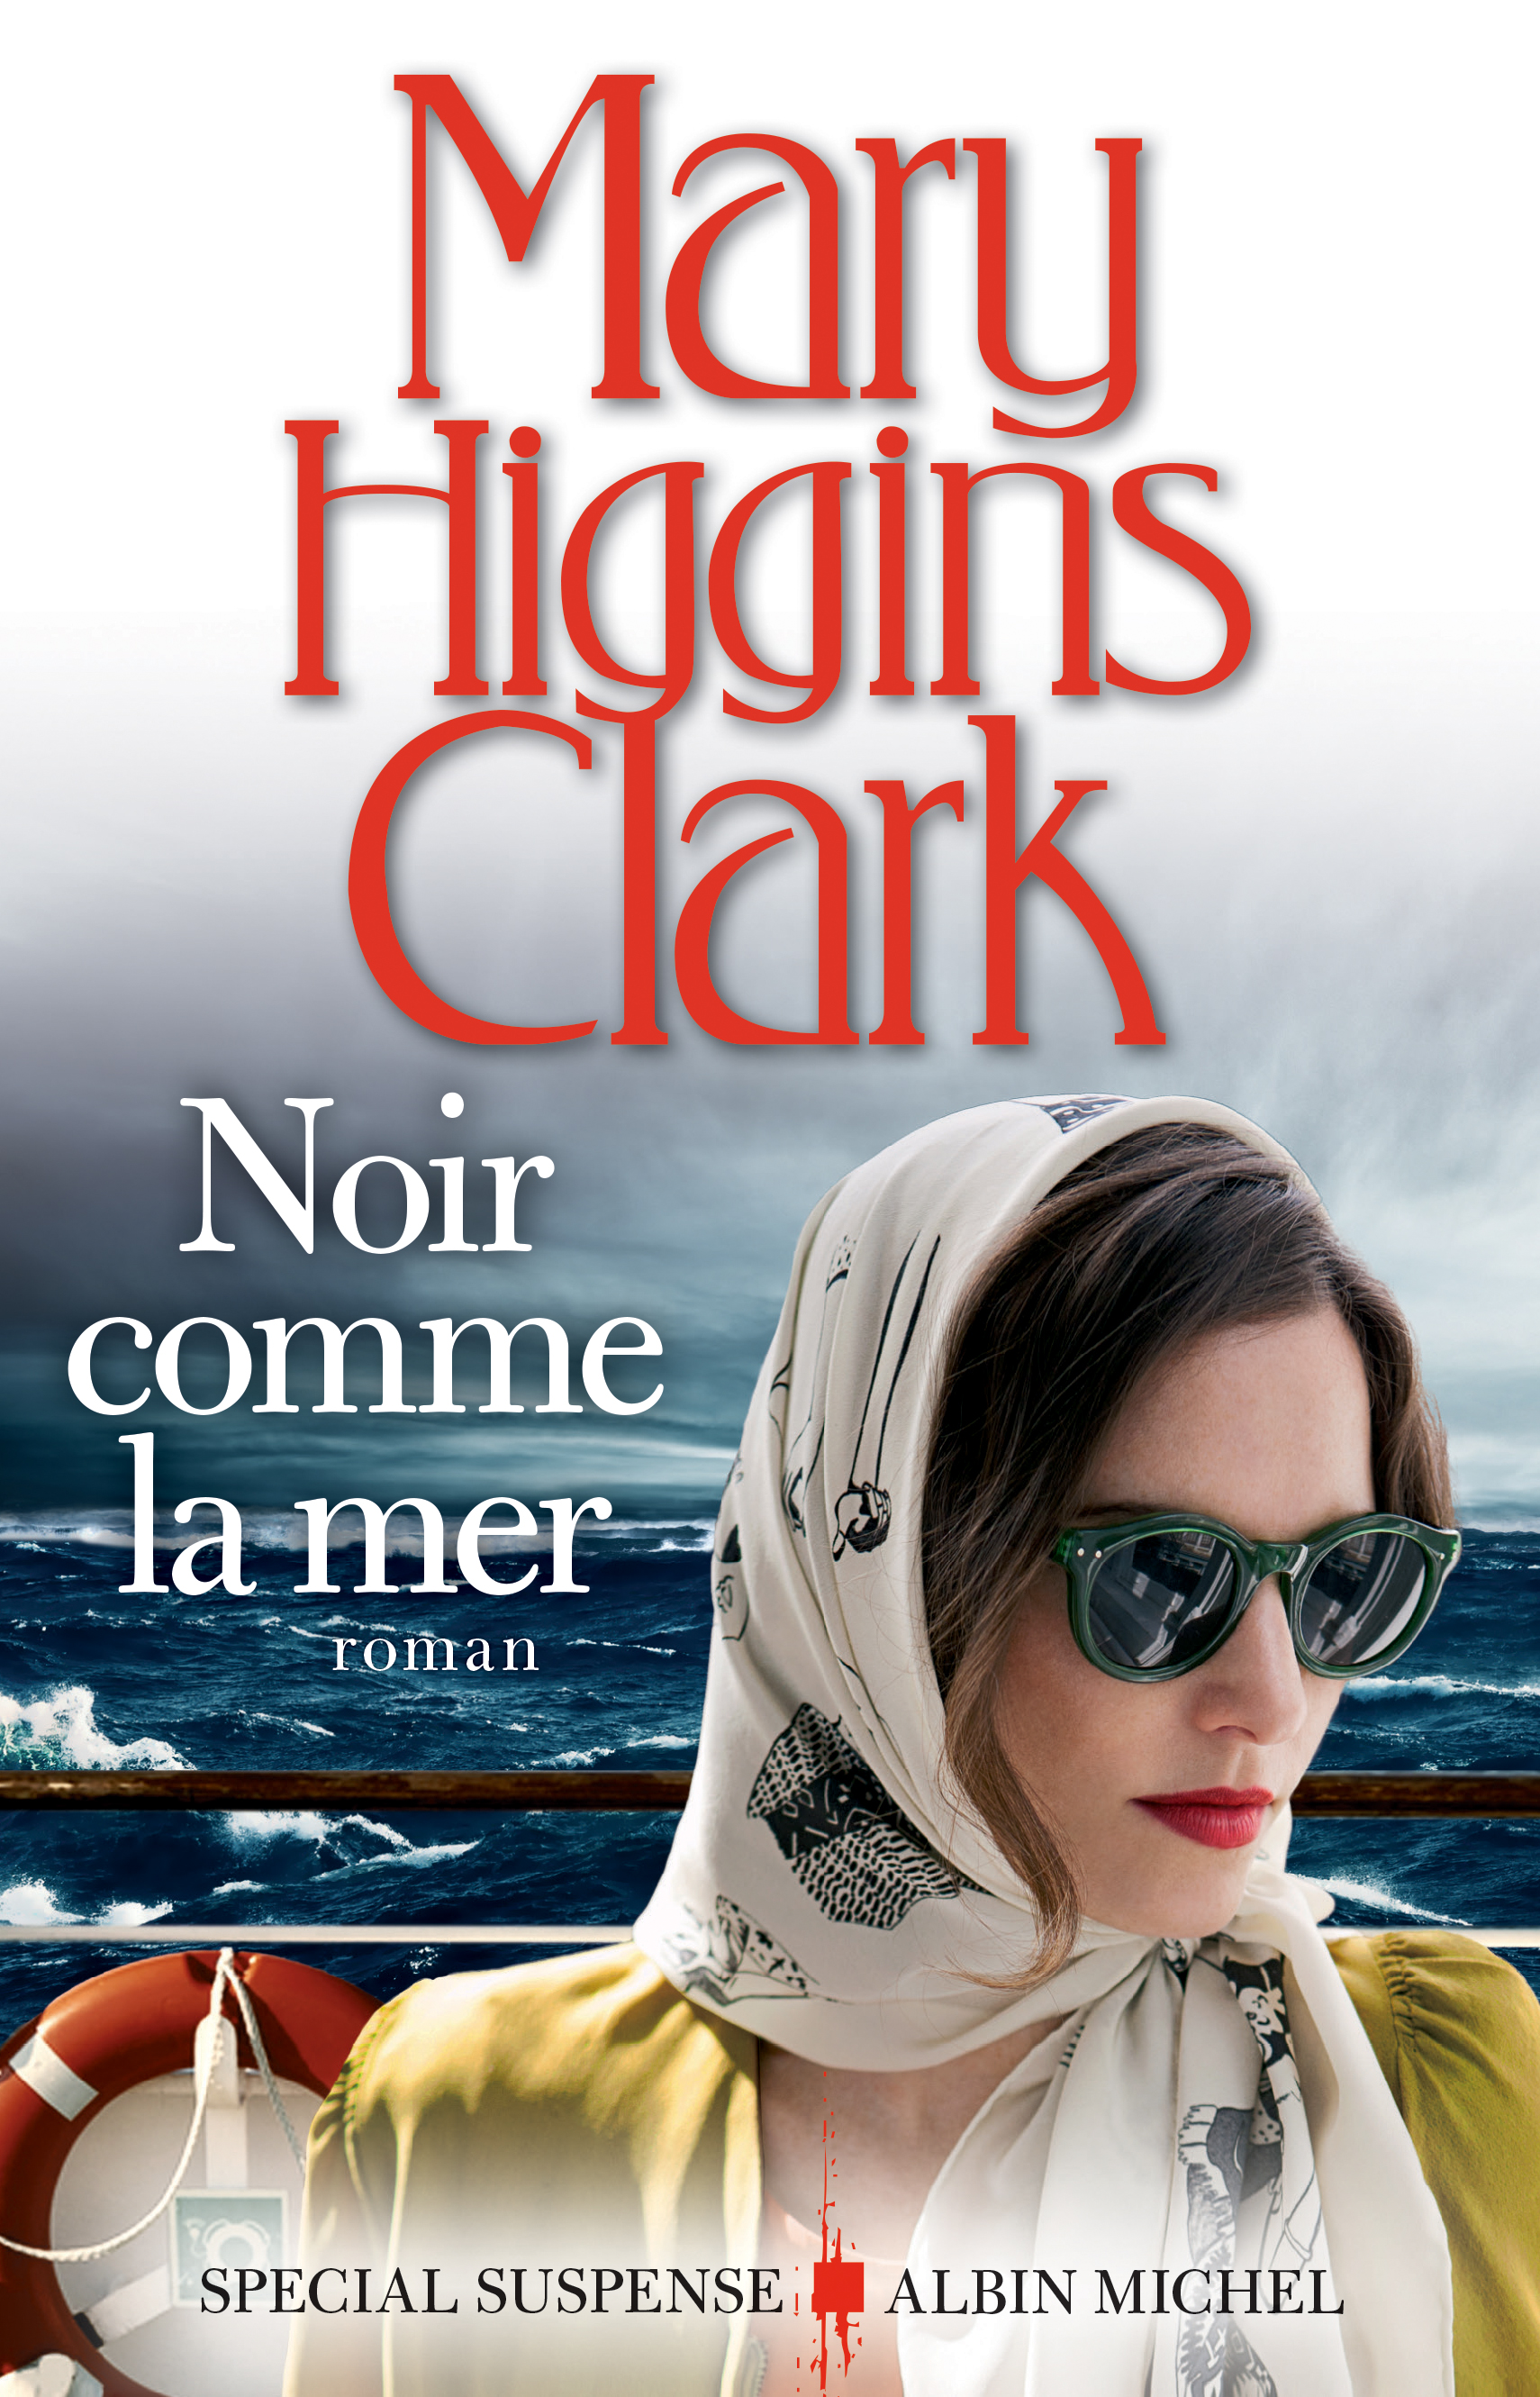 Le nouveau roman de Mary Higgins Clark le 10 mai en librairie | www.cnewsmatin.fr1710 x 2661